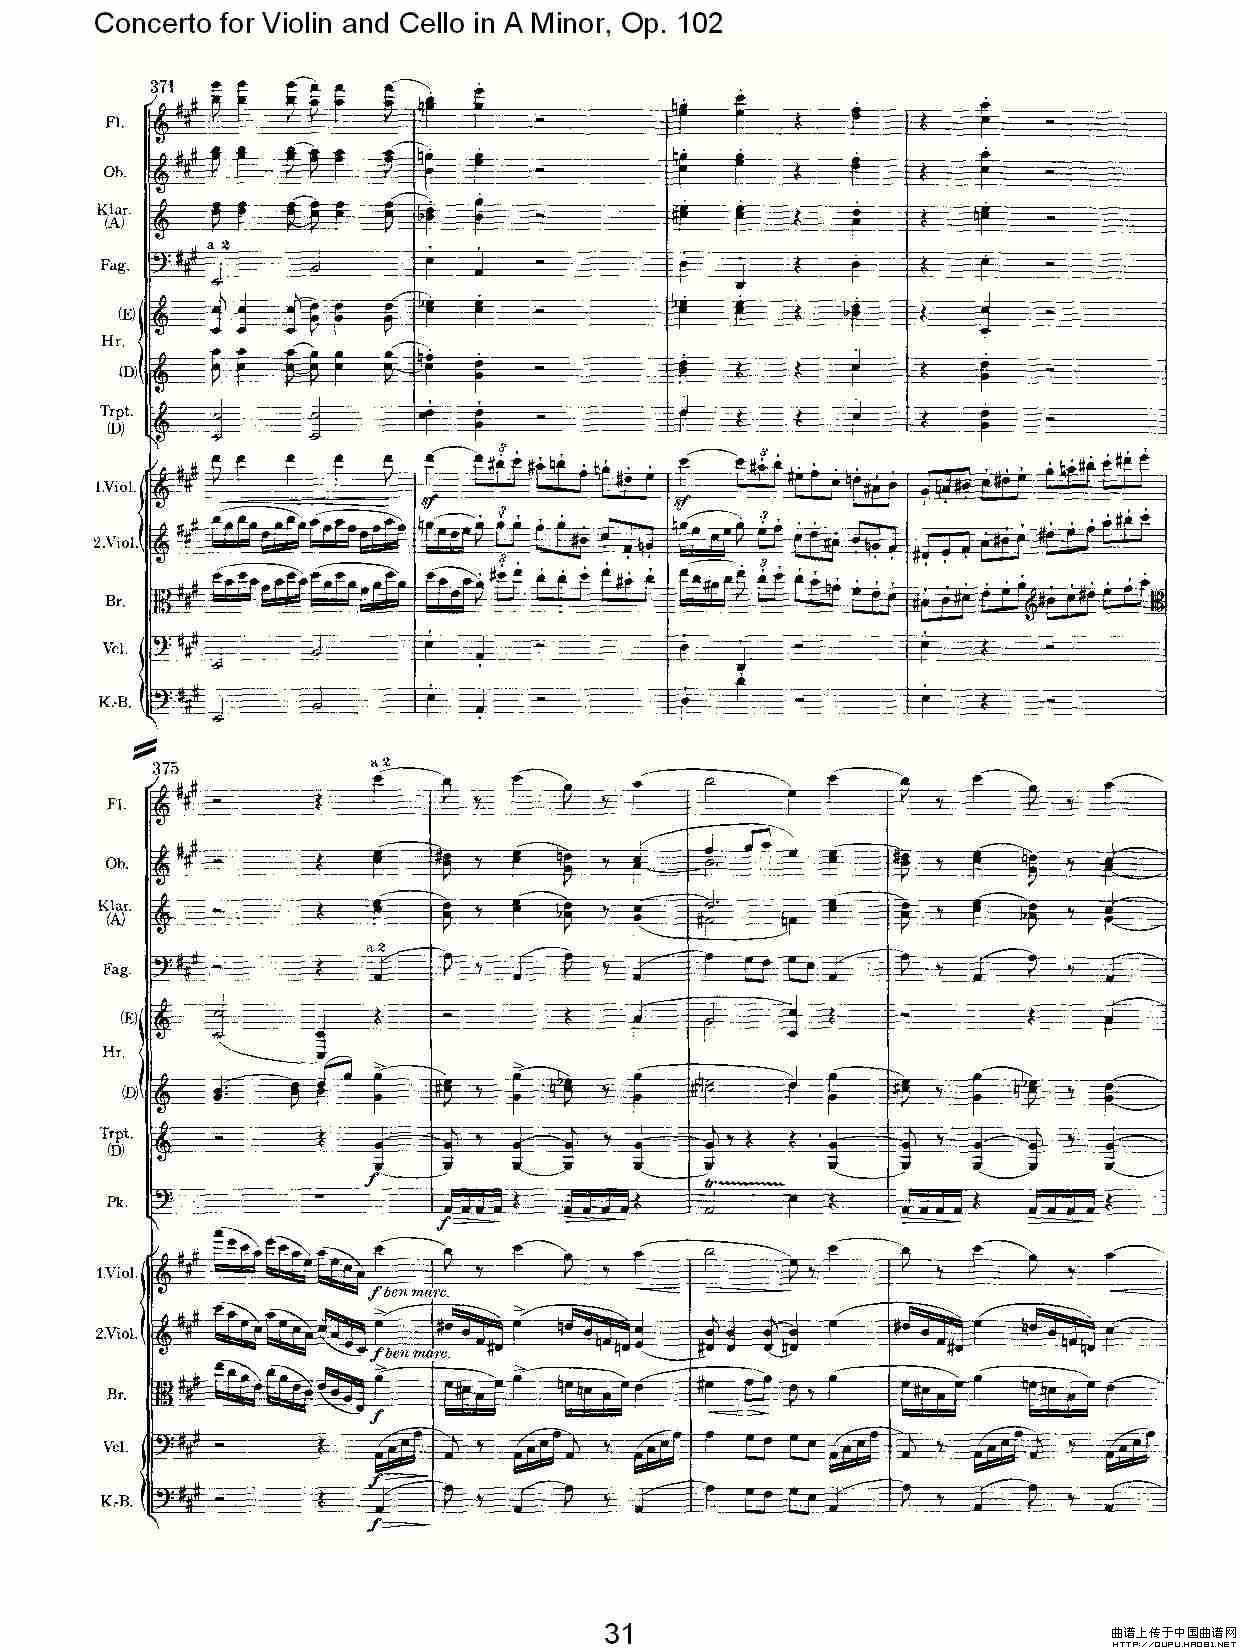 A小调小提琴与大提琴协奏曲, Op.102第一乐章